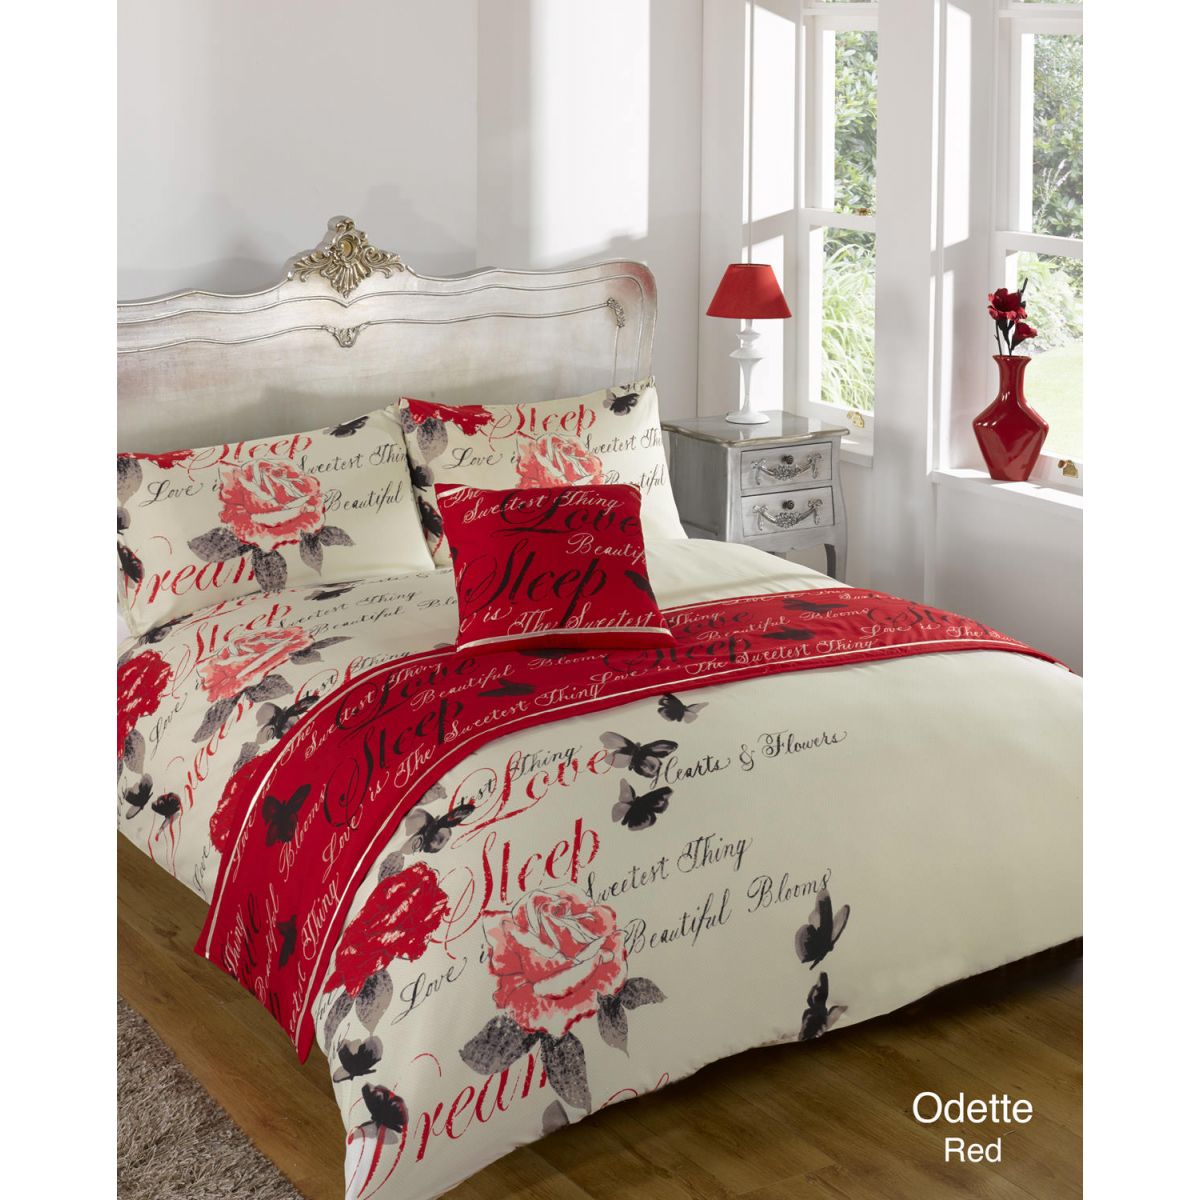 Odette Bed In A Bag Duvet Cover Set, Single - Red 